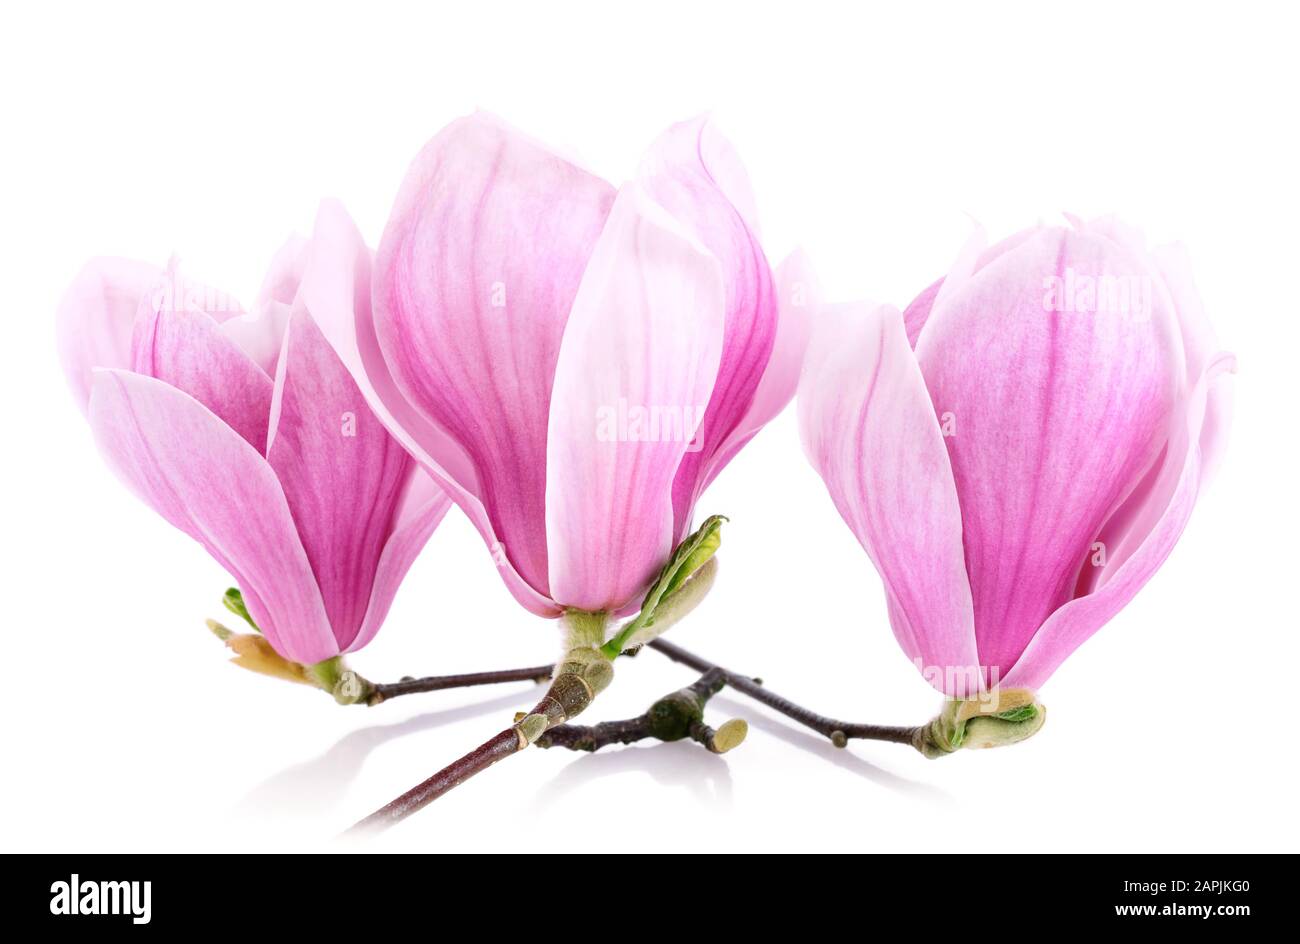 Photo studio lumineux de trois fleurs de magnolia isolées sur blanc pur Banque D'Images